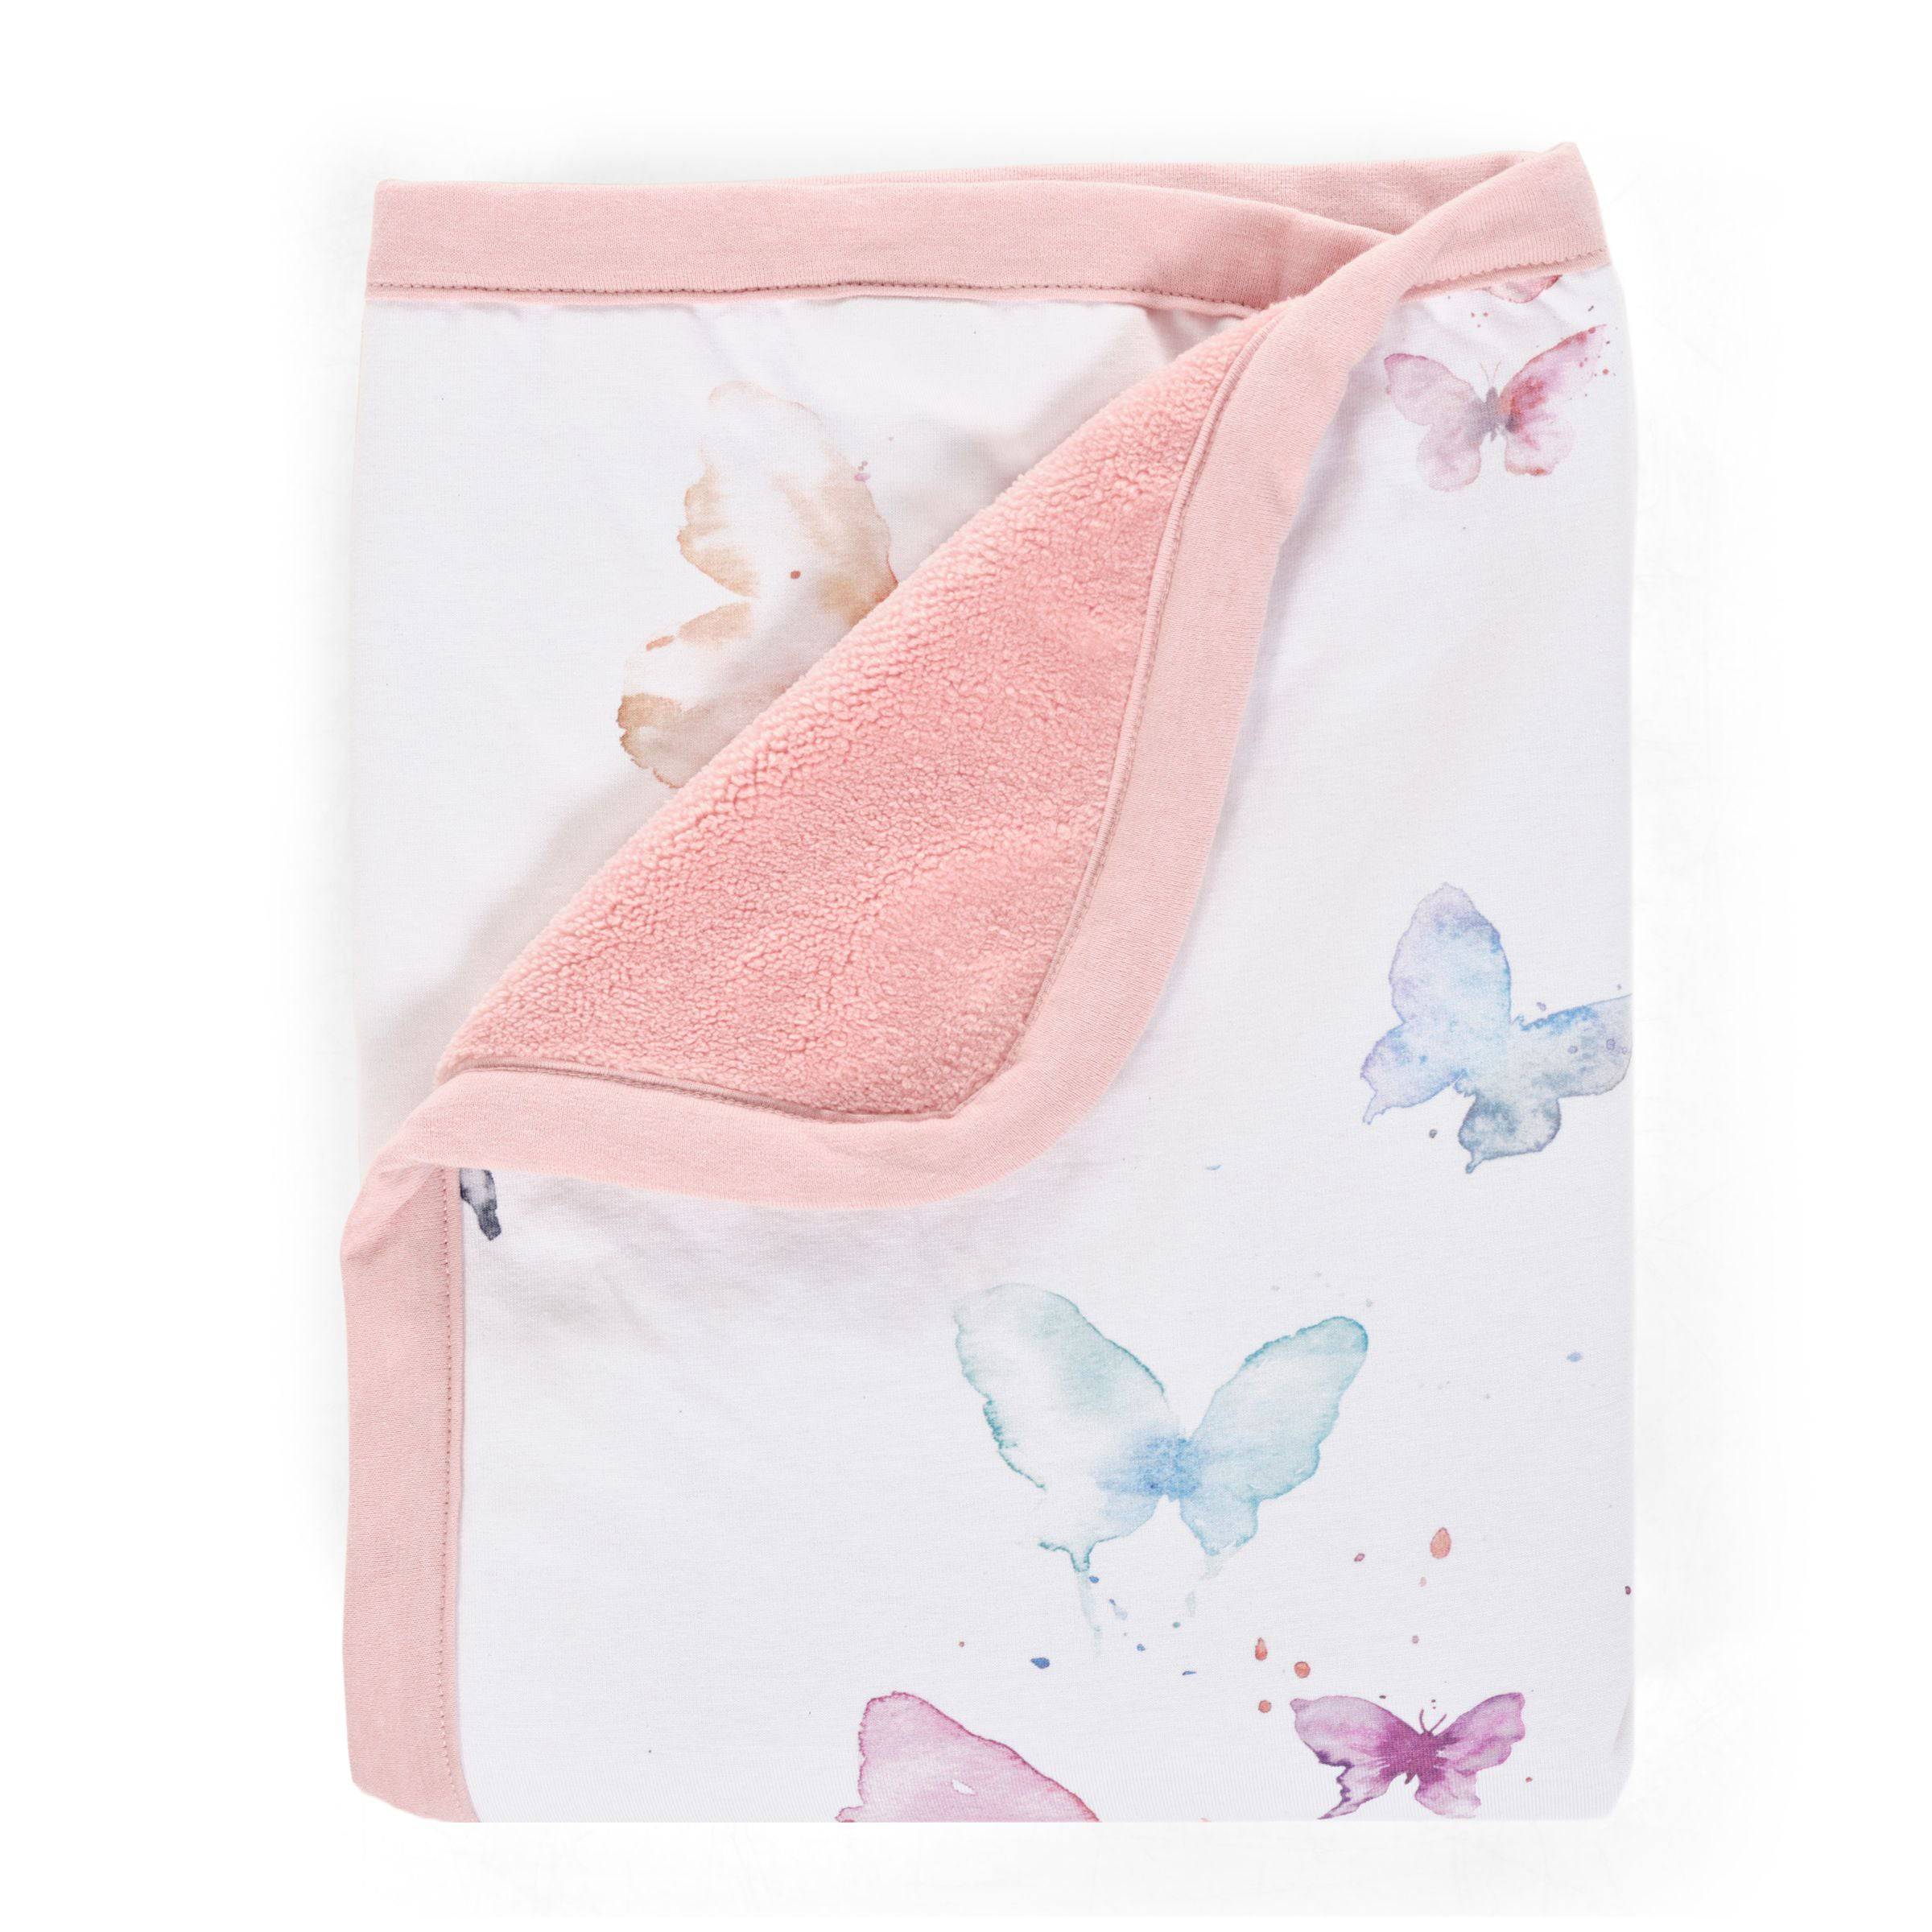 Butterfly Cuddle Blanket - Twinkle Twinkle Little One